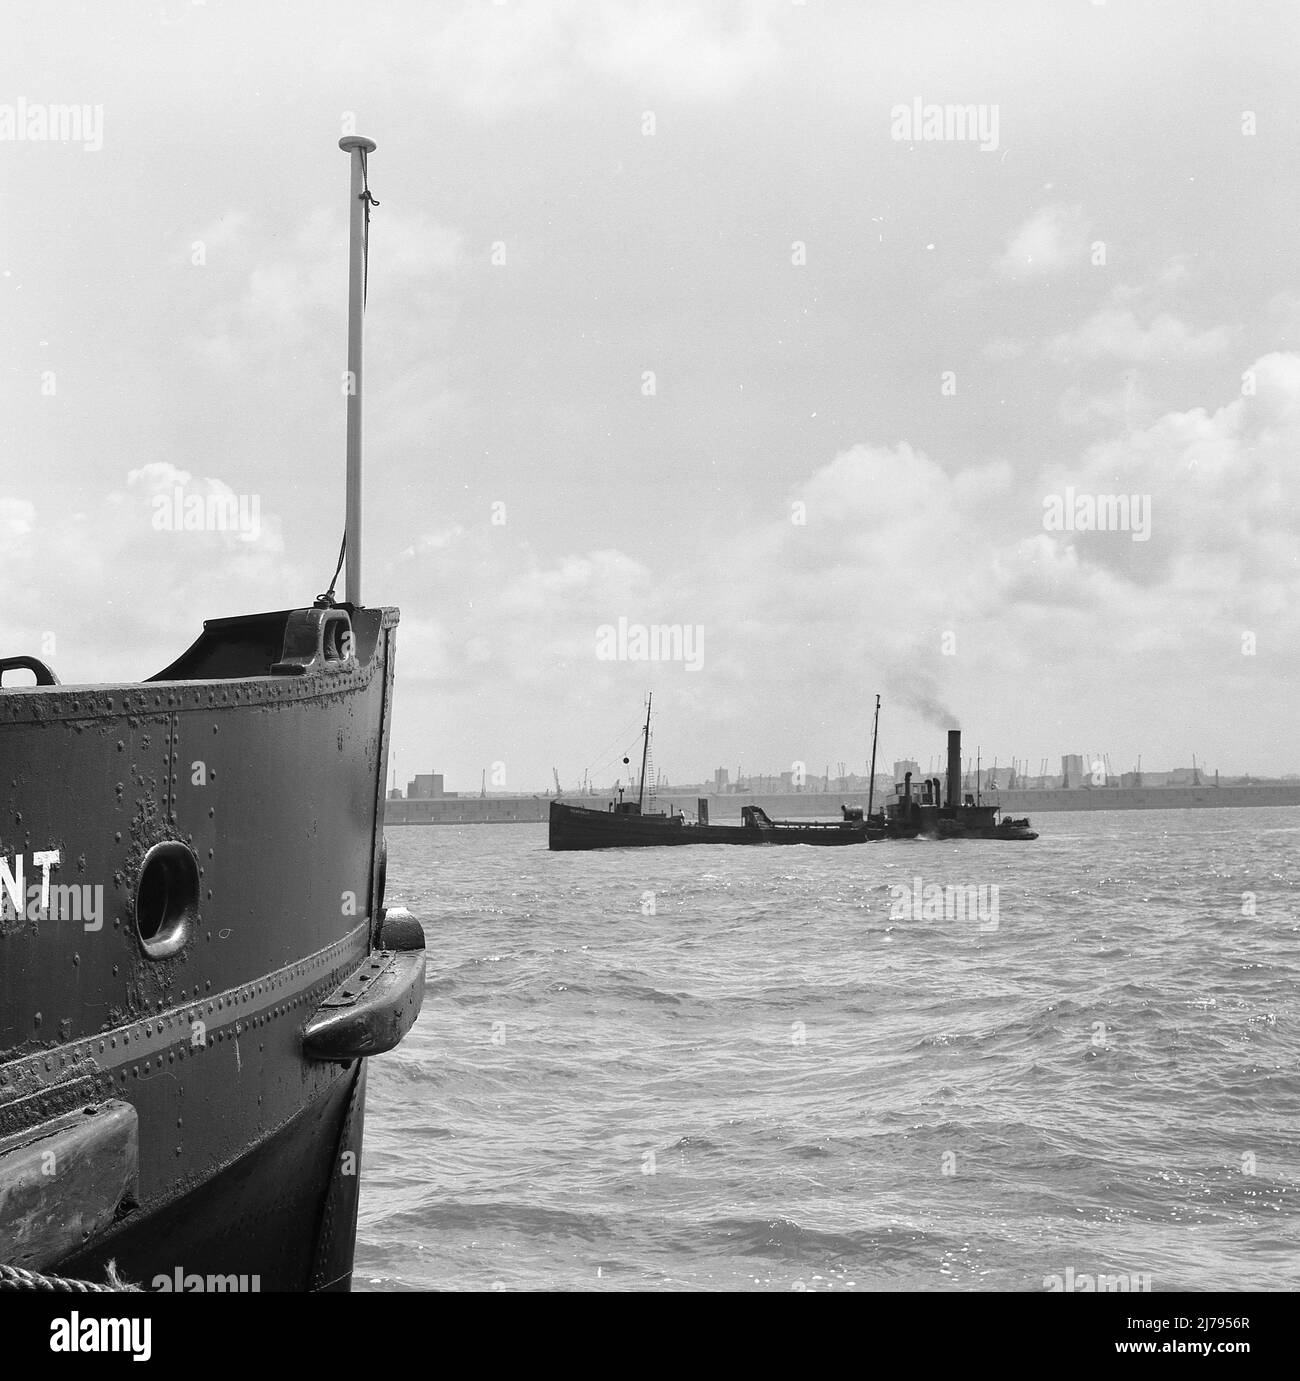 1969, historisch, der Dampfbagger „Peakdale“ auf der Mersey, Liverpool, England, Großbritannien, dem letzten kohlebetriebenen dampfbetriebenen Schiff, das kommerziell auf der Mersey gehandelt wird. Ein Saugtrichter-Bagger, der 1910 in Kinderdijk, Niederlande, gebaut wurde, hieß ihr ursprünglicher Name 'Prinses Juliana'. Die Manchester Ship Canal Co. Erwarb sie 1913, ohne den Namen zu ändern. 1962 von Richard Abel & Sons gekauft und in Peakdale umbenannt, baggte sie in der Mersey-Mündung nach Sand, bis sie 1970 verschrottet wurde. Stockfoto